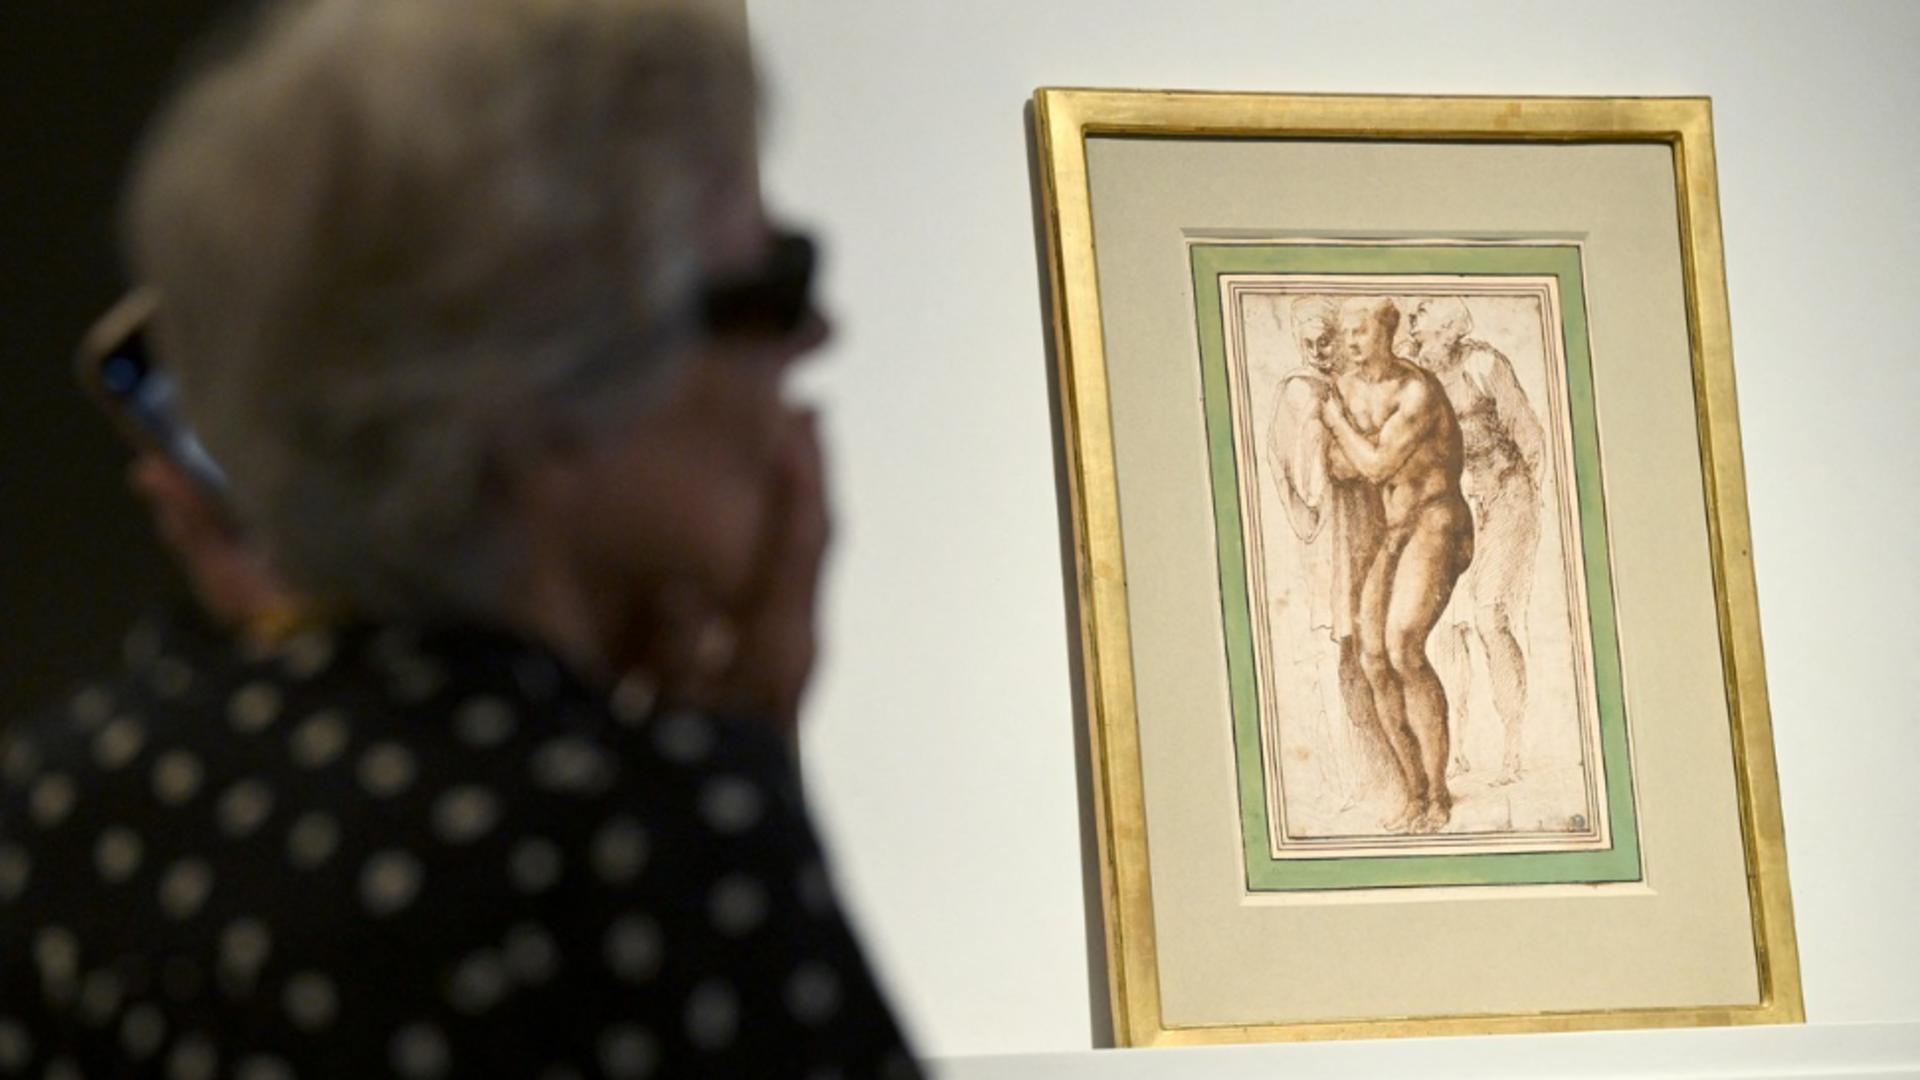 Desen de Michelangelo adjudecat pentru o sumă fabuloasă. Foto/Profimedia